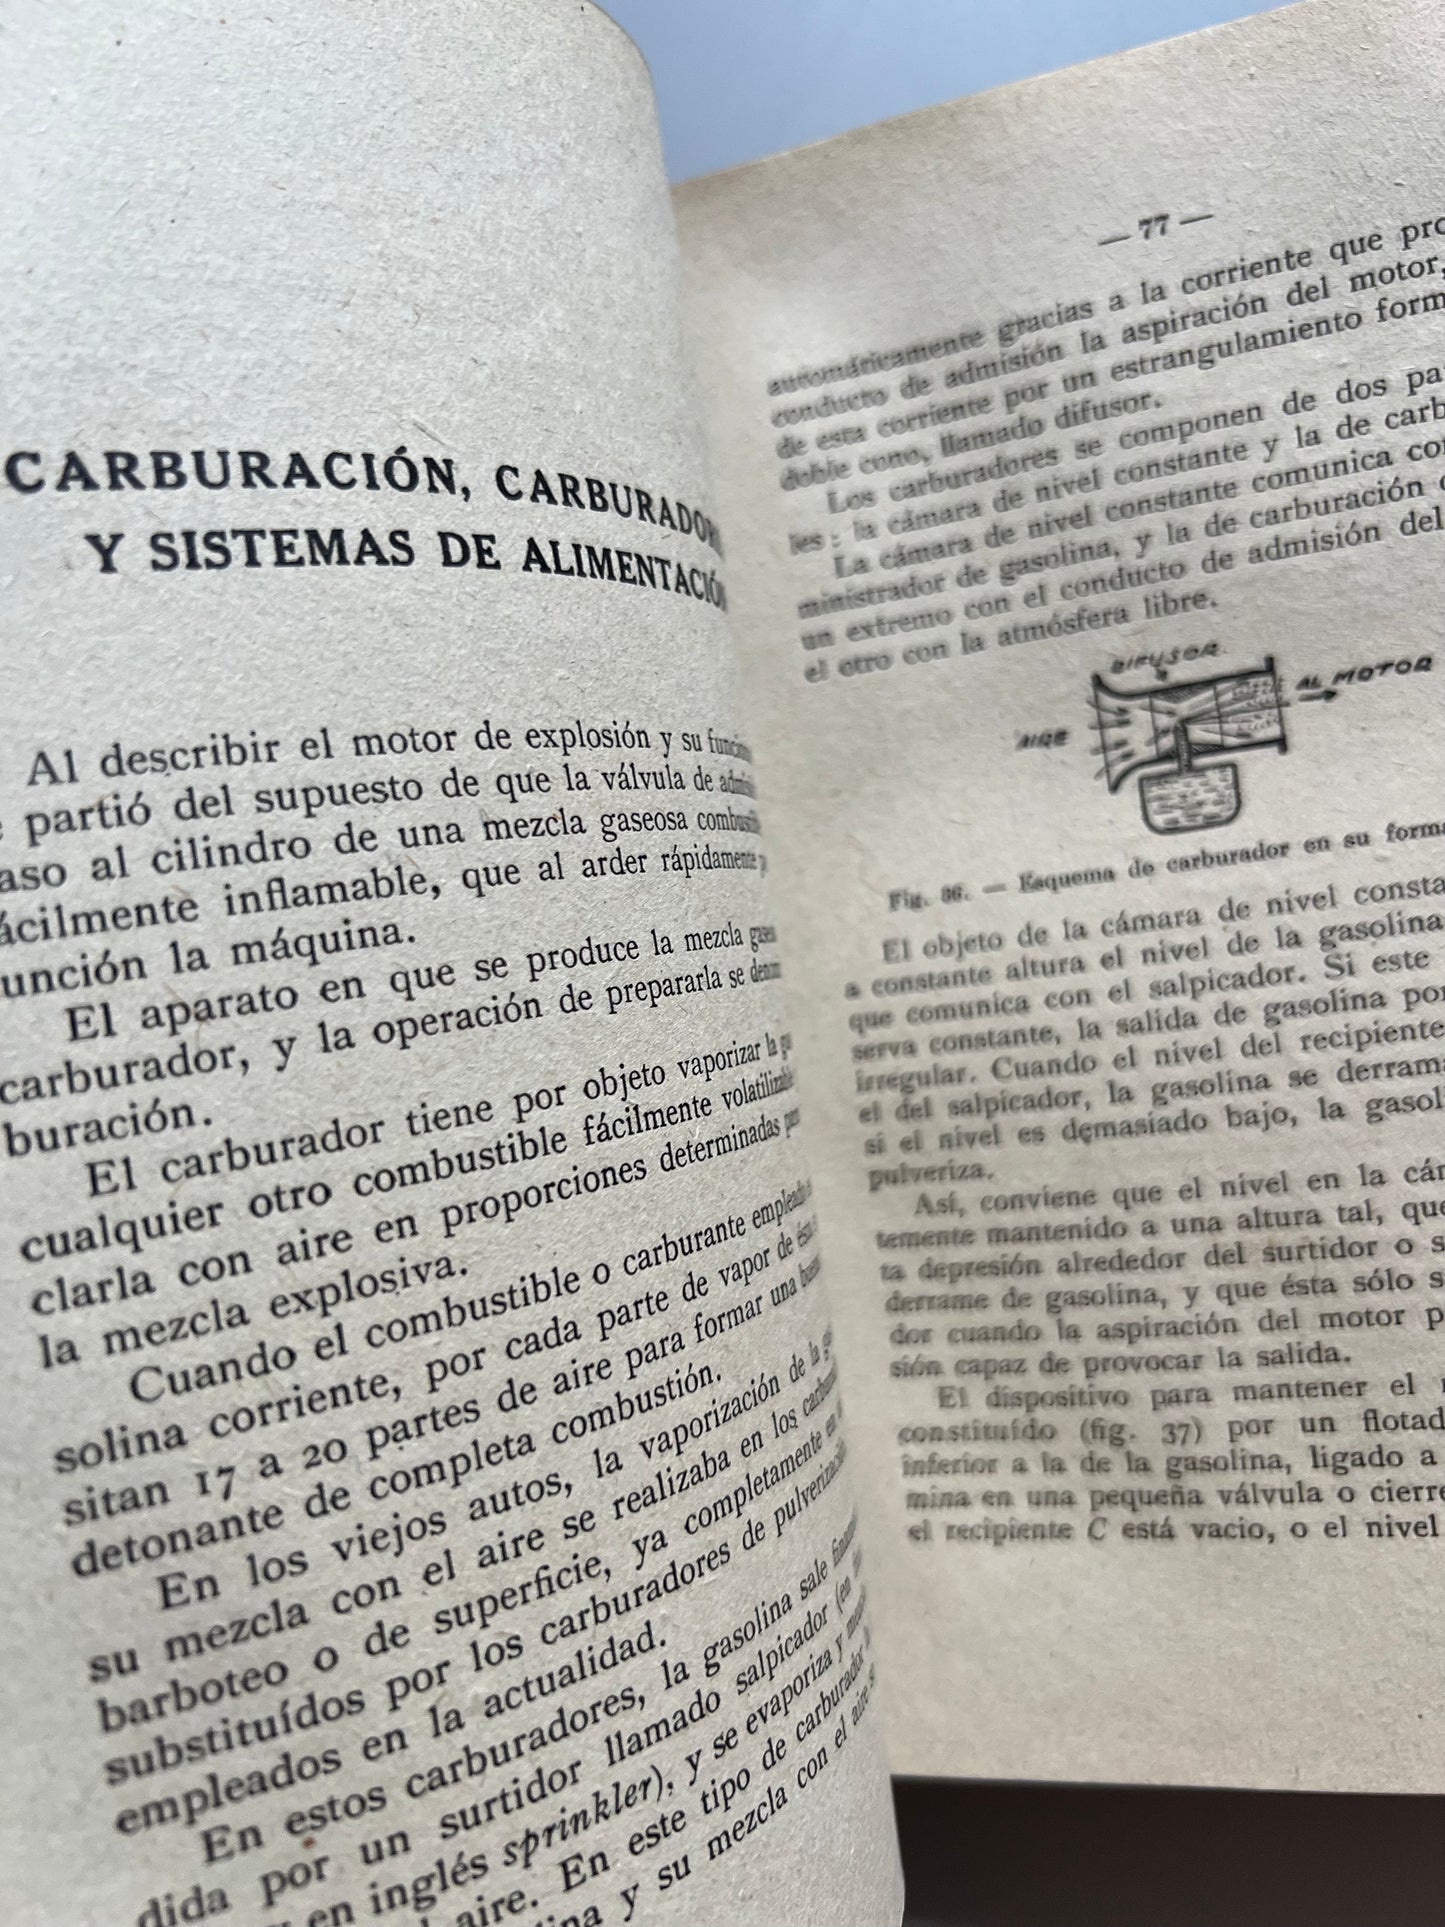 Nuevo tratado del automóvil moderno, Charles H. Curtis - Antonio Roch editor, ca. 1955